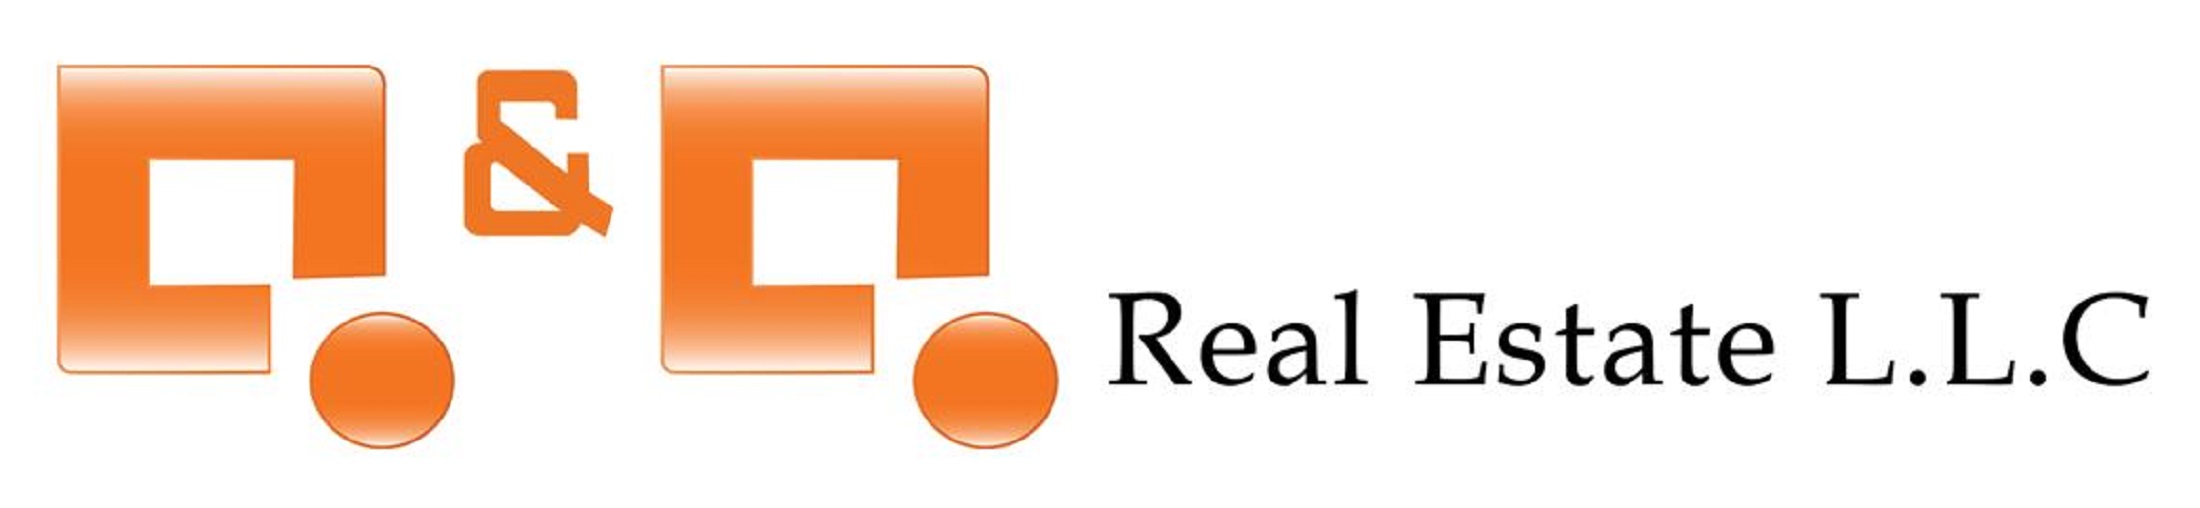 Q & Q Real Estate